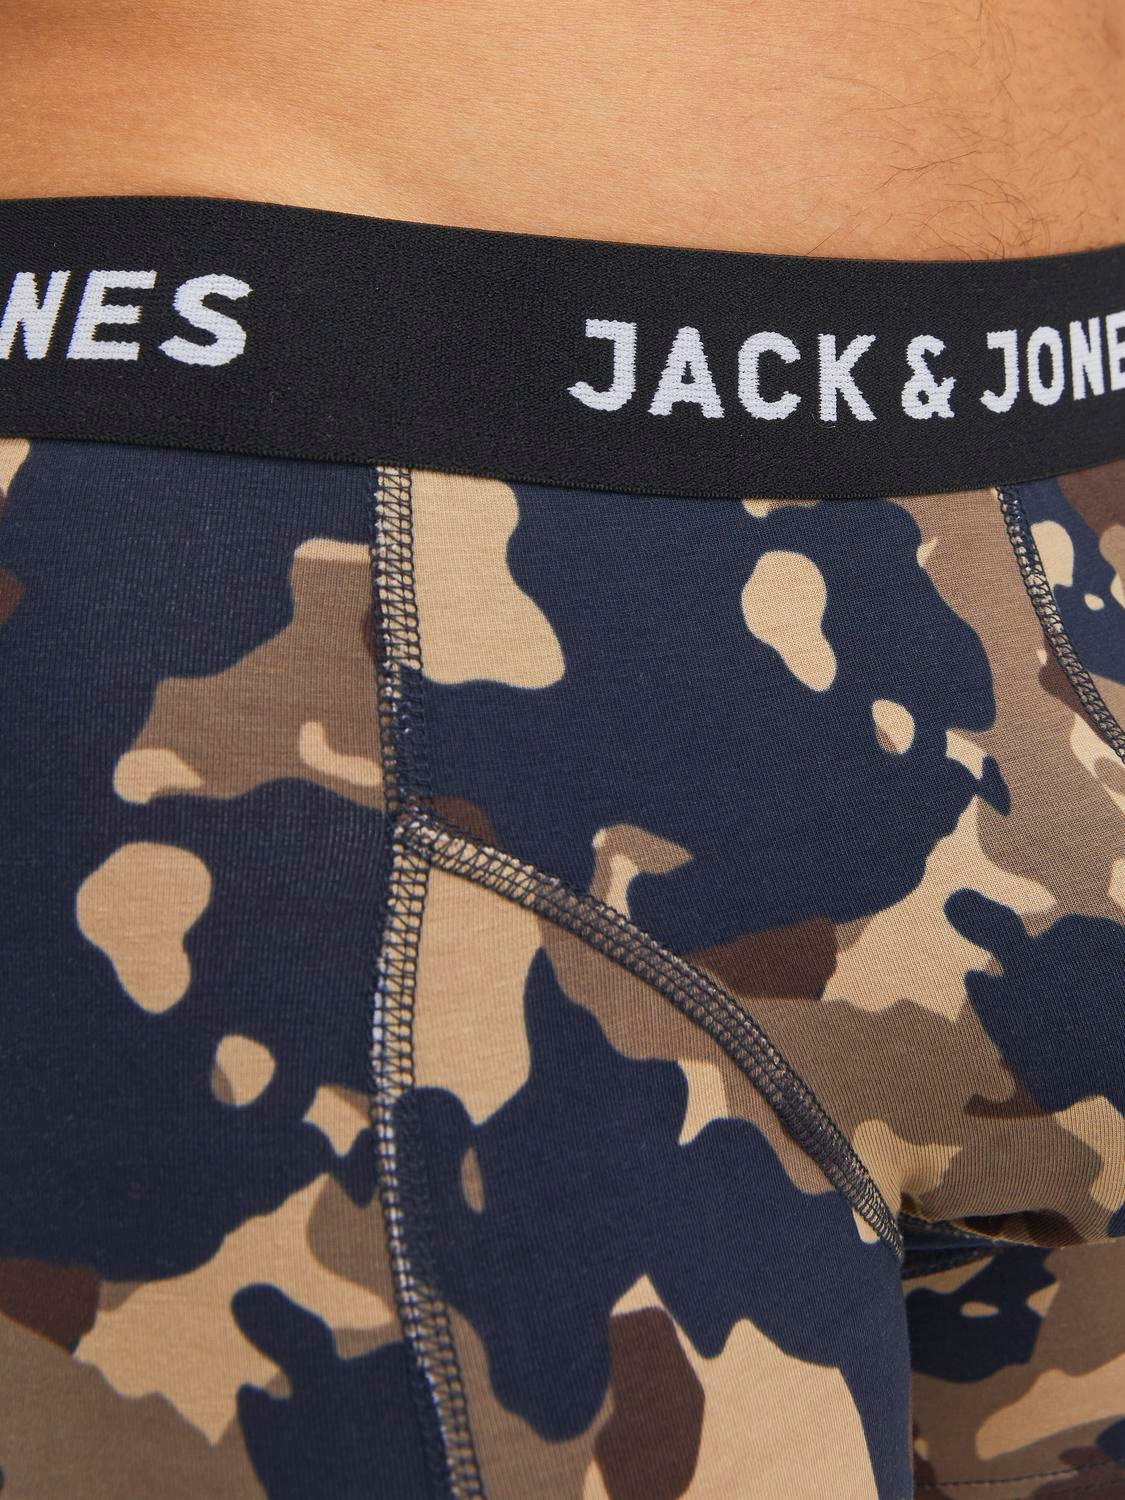 Jack & Jones Pack de 3 Boxers -Mountain View - 12237445